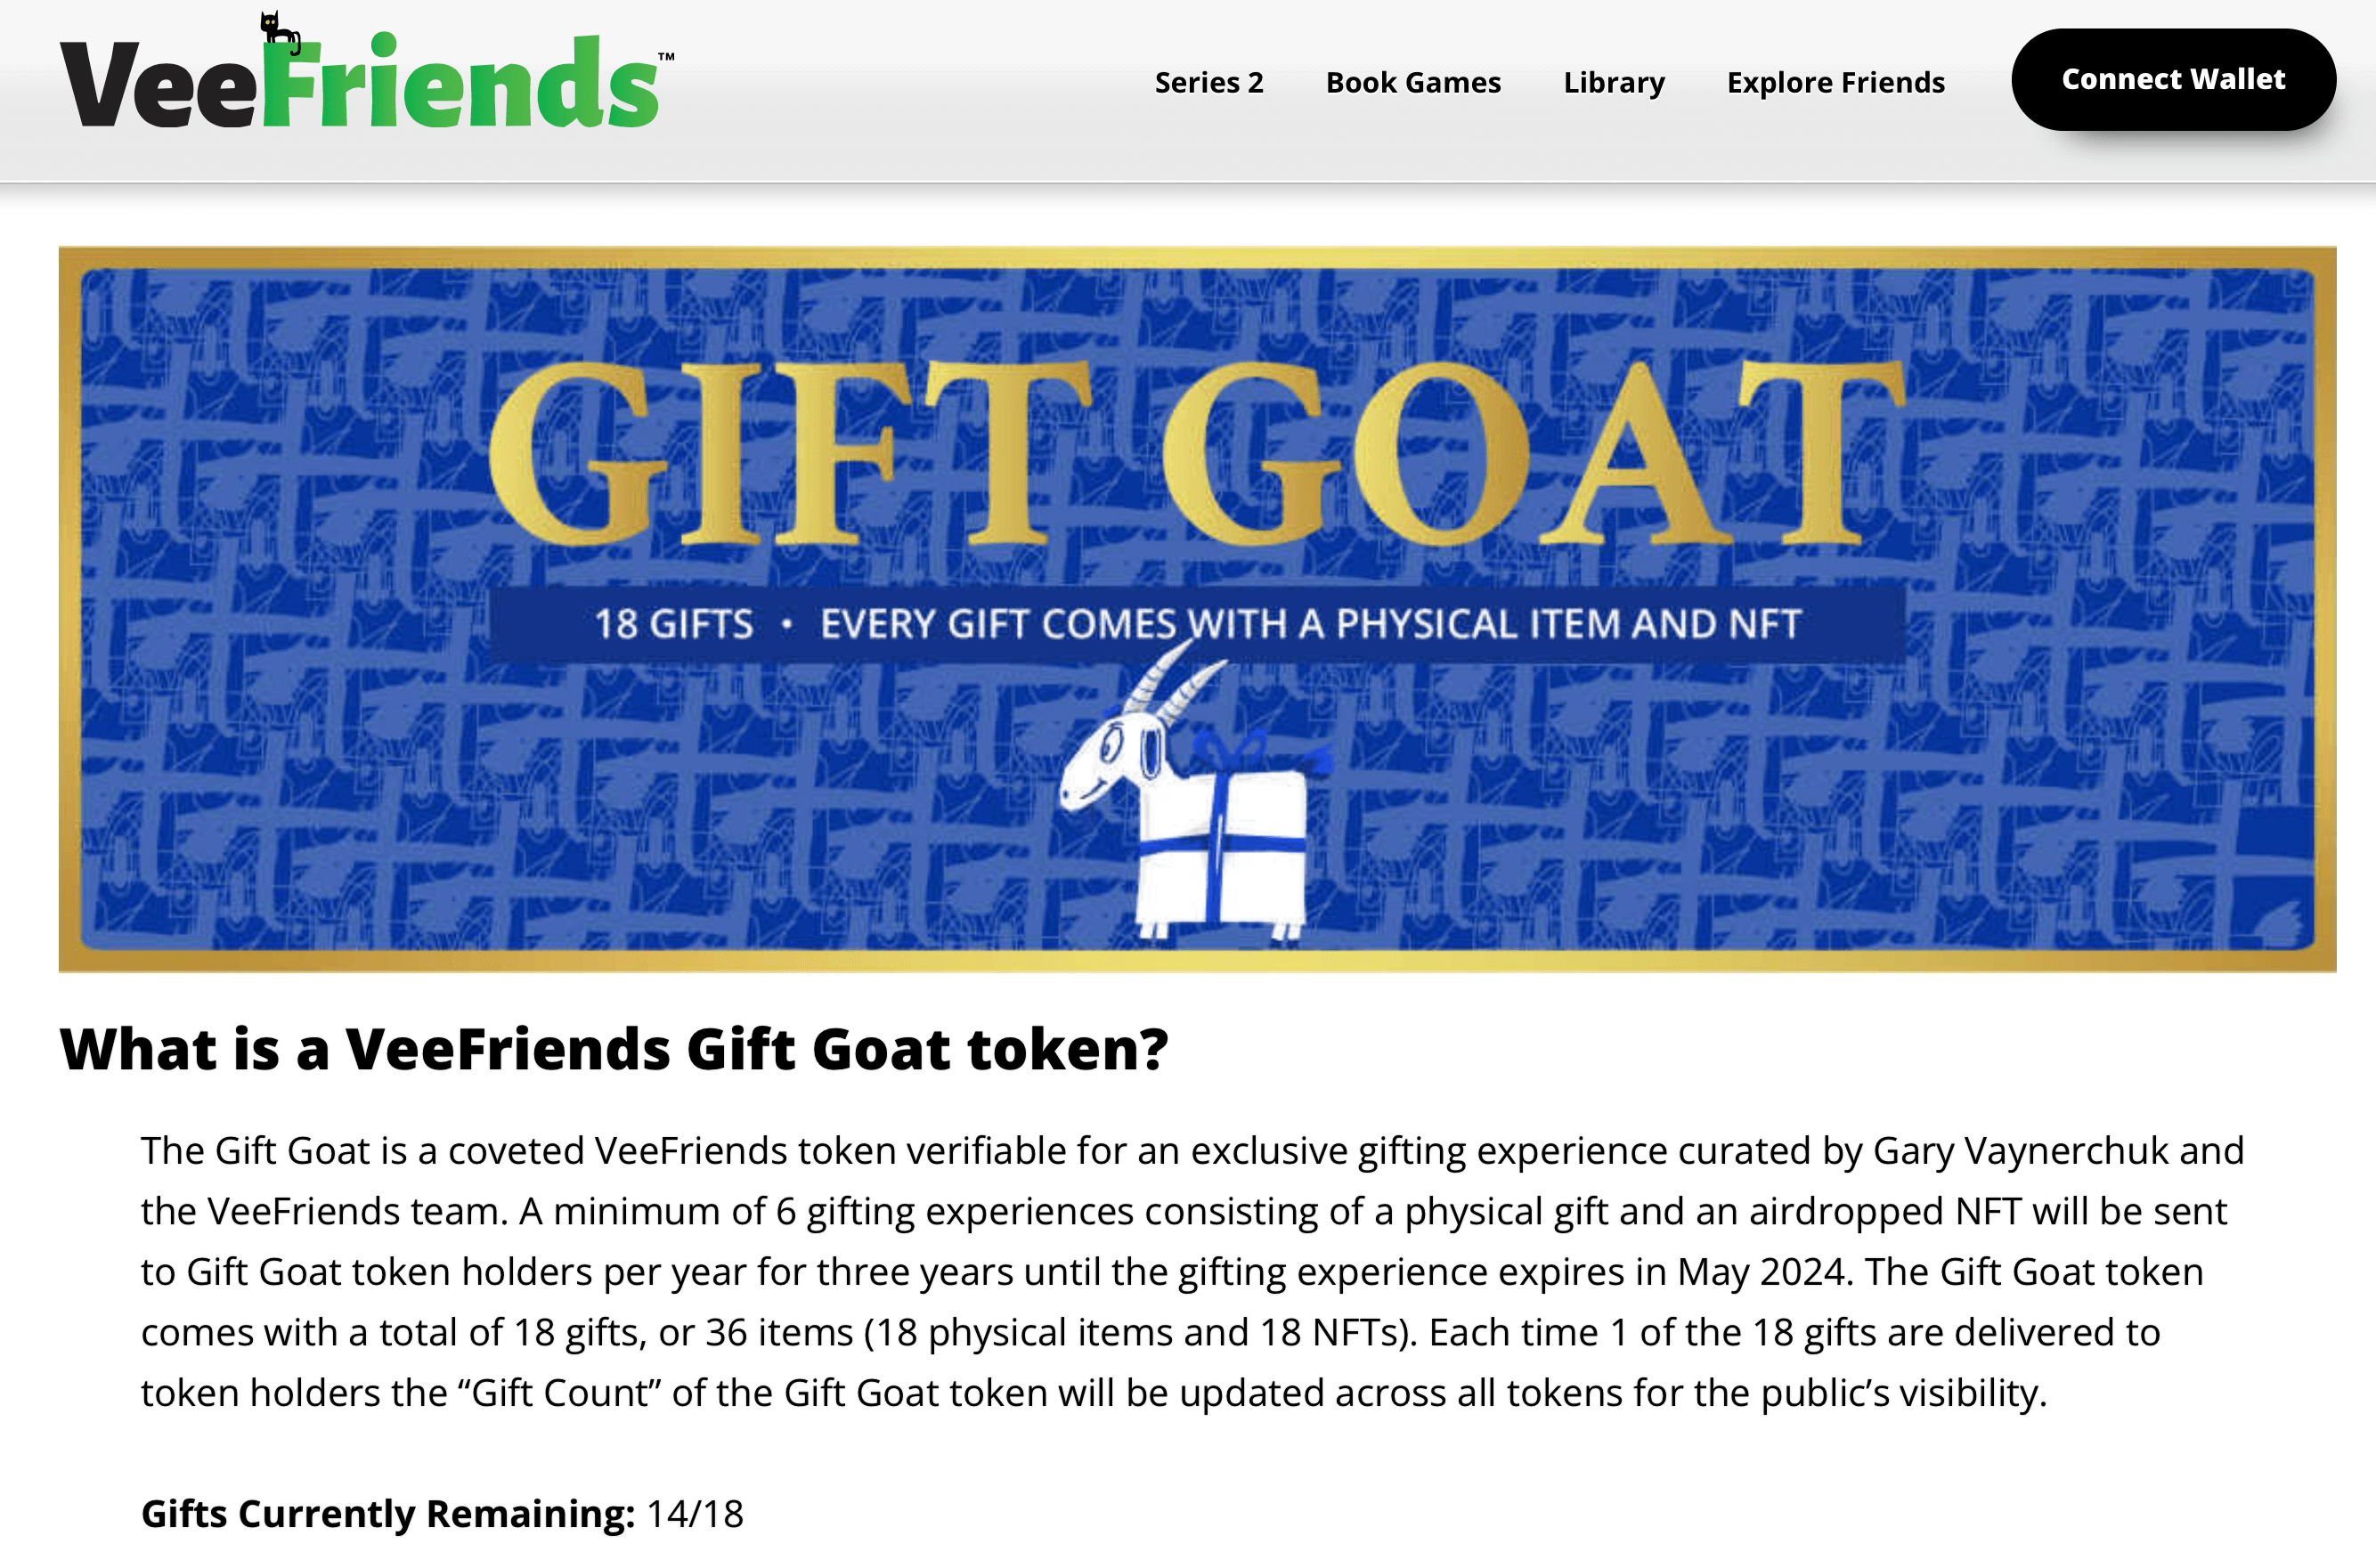 image of VeeFriends Gift Goat token benefits on VeeFriends website